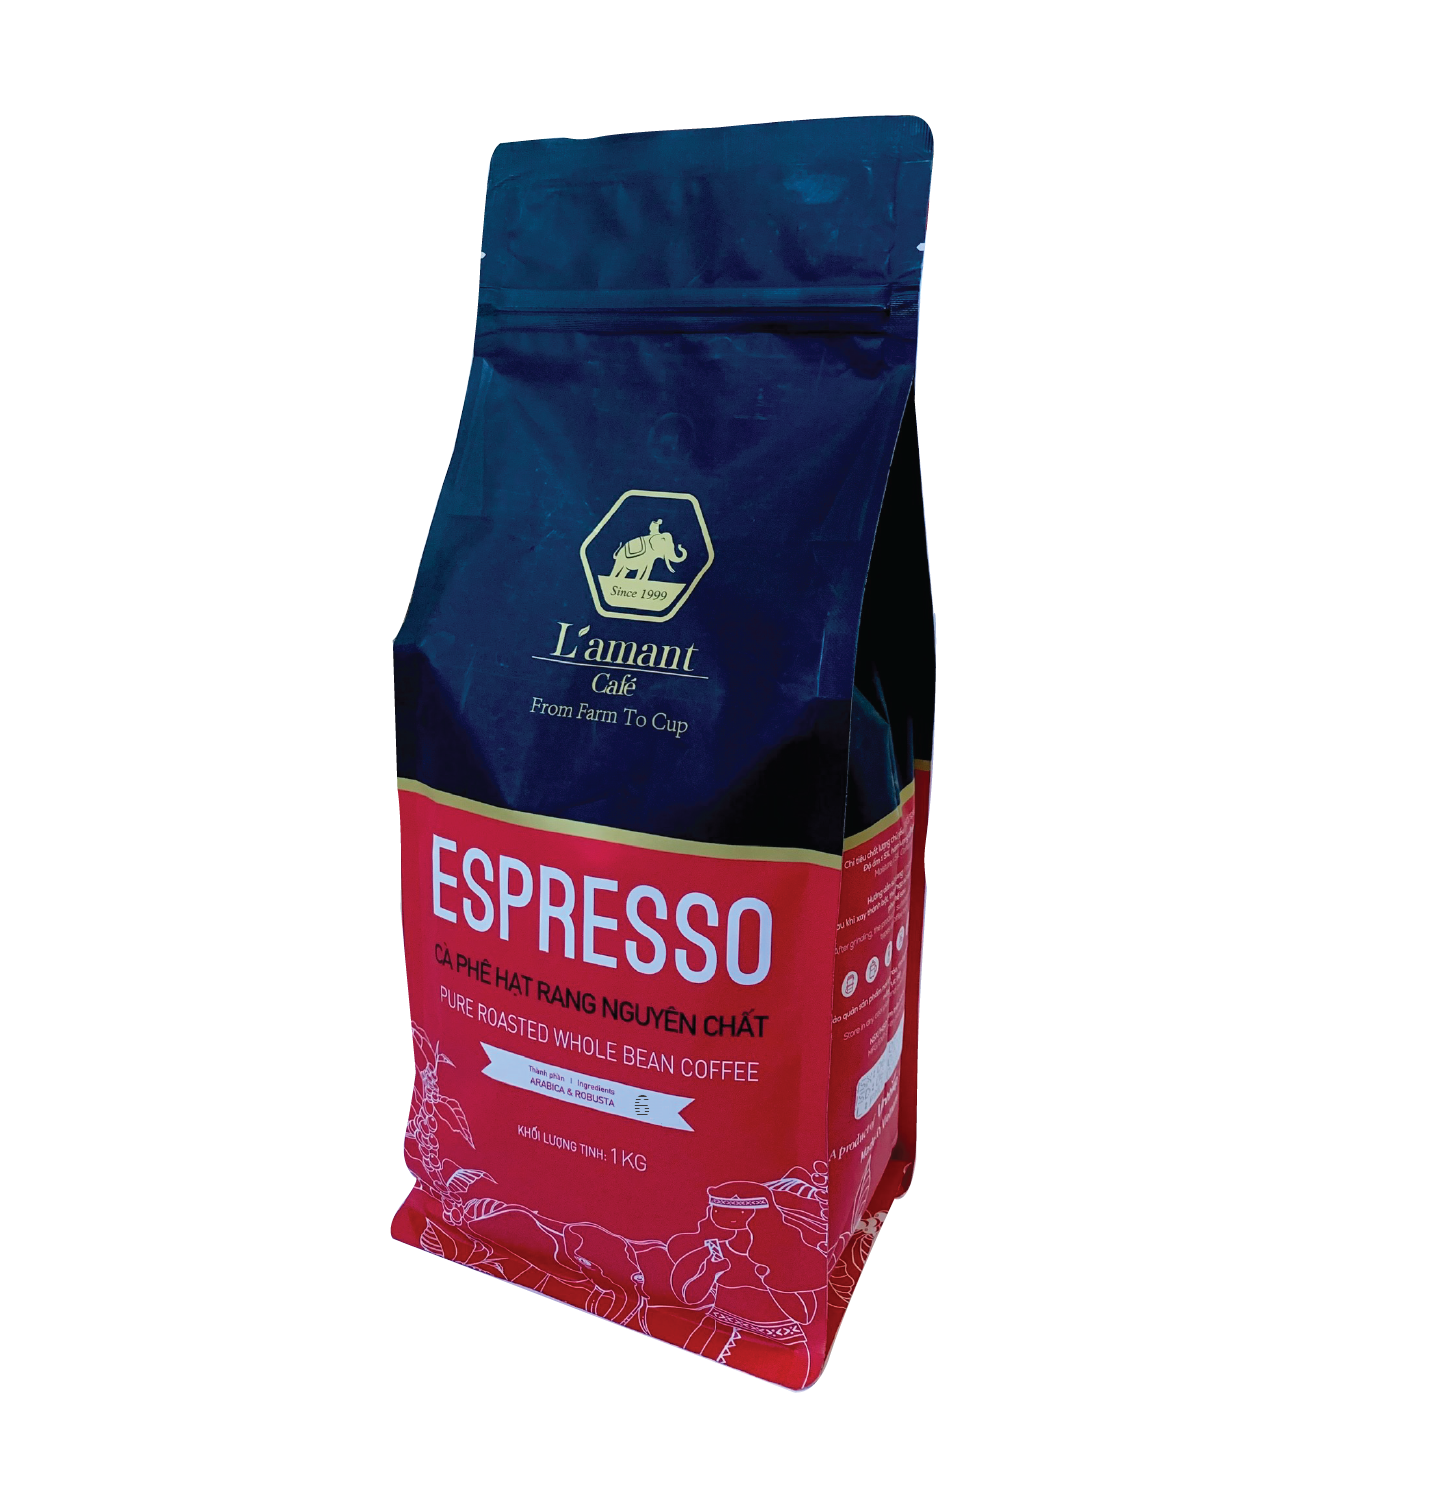  Cà phê hạt rang L’amant Espresso số 06 - L’amant No.06 Espresso Roasted Coffee 